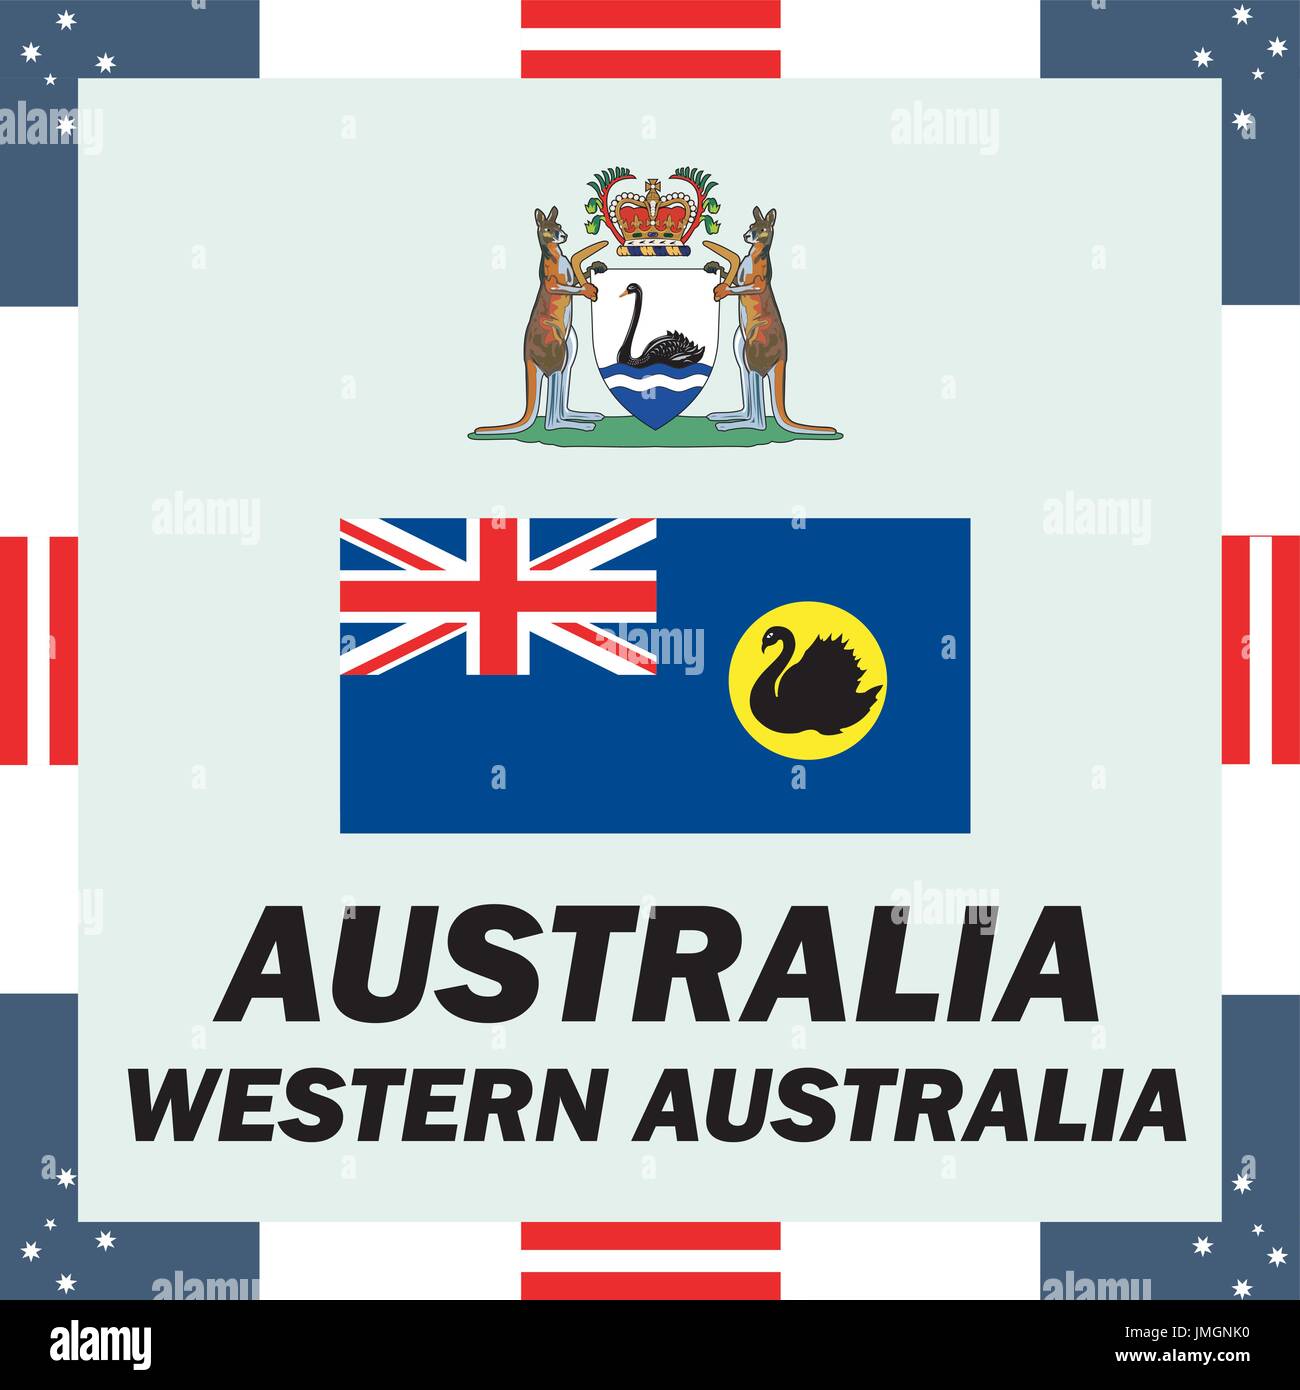 Site officiel du gouvernement des éléments de l'Australie - l'Australie Occidentale Illustration de Vecteur